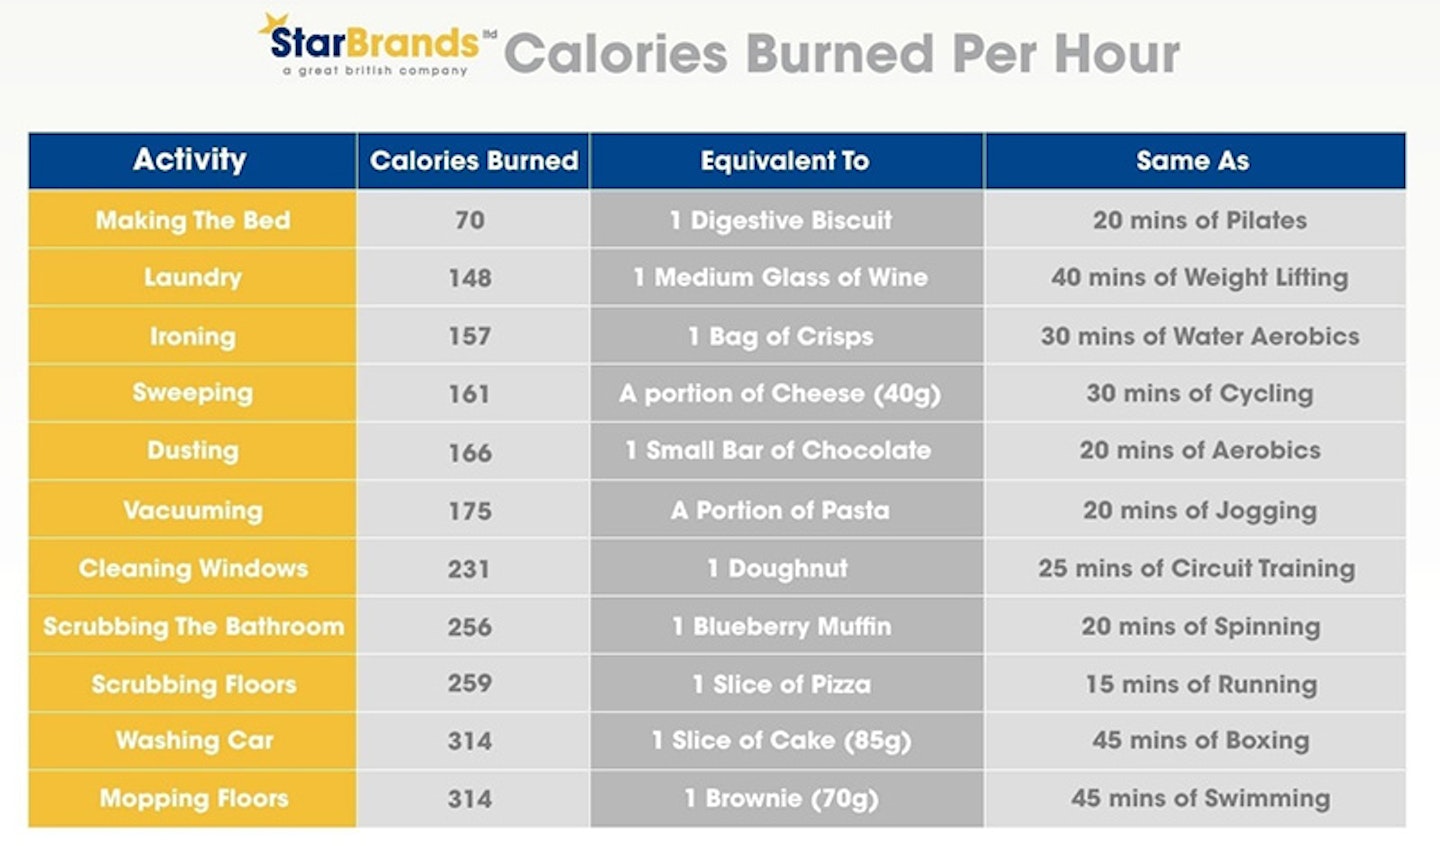 Housework calories burned per hour